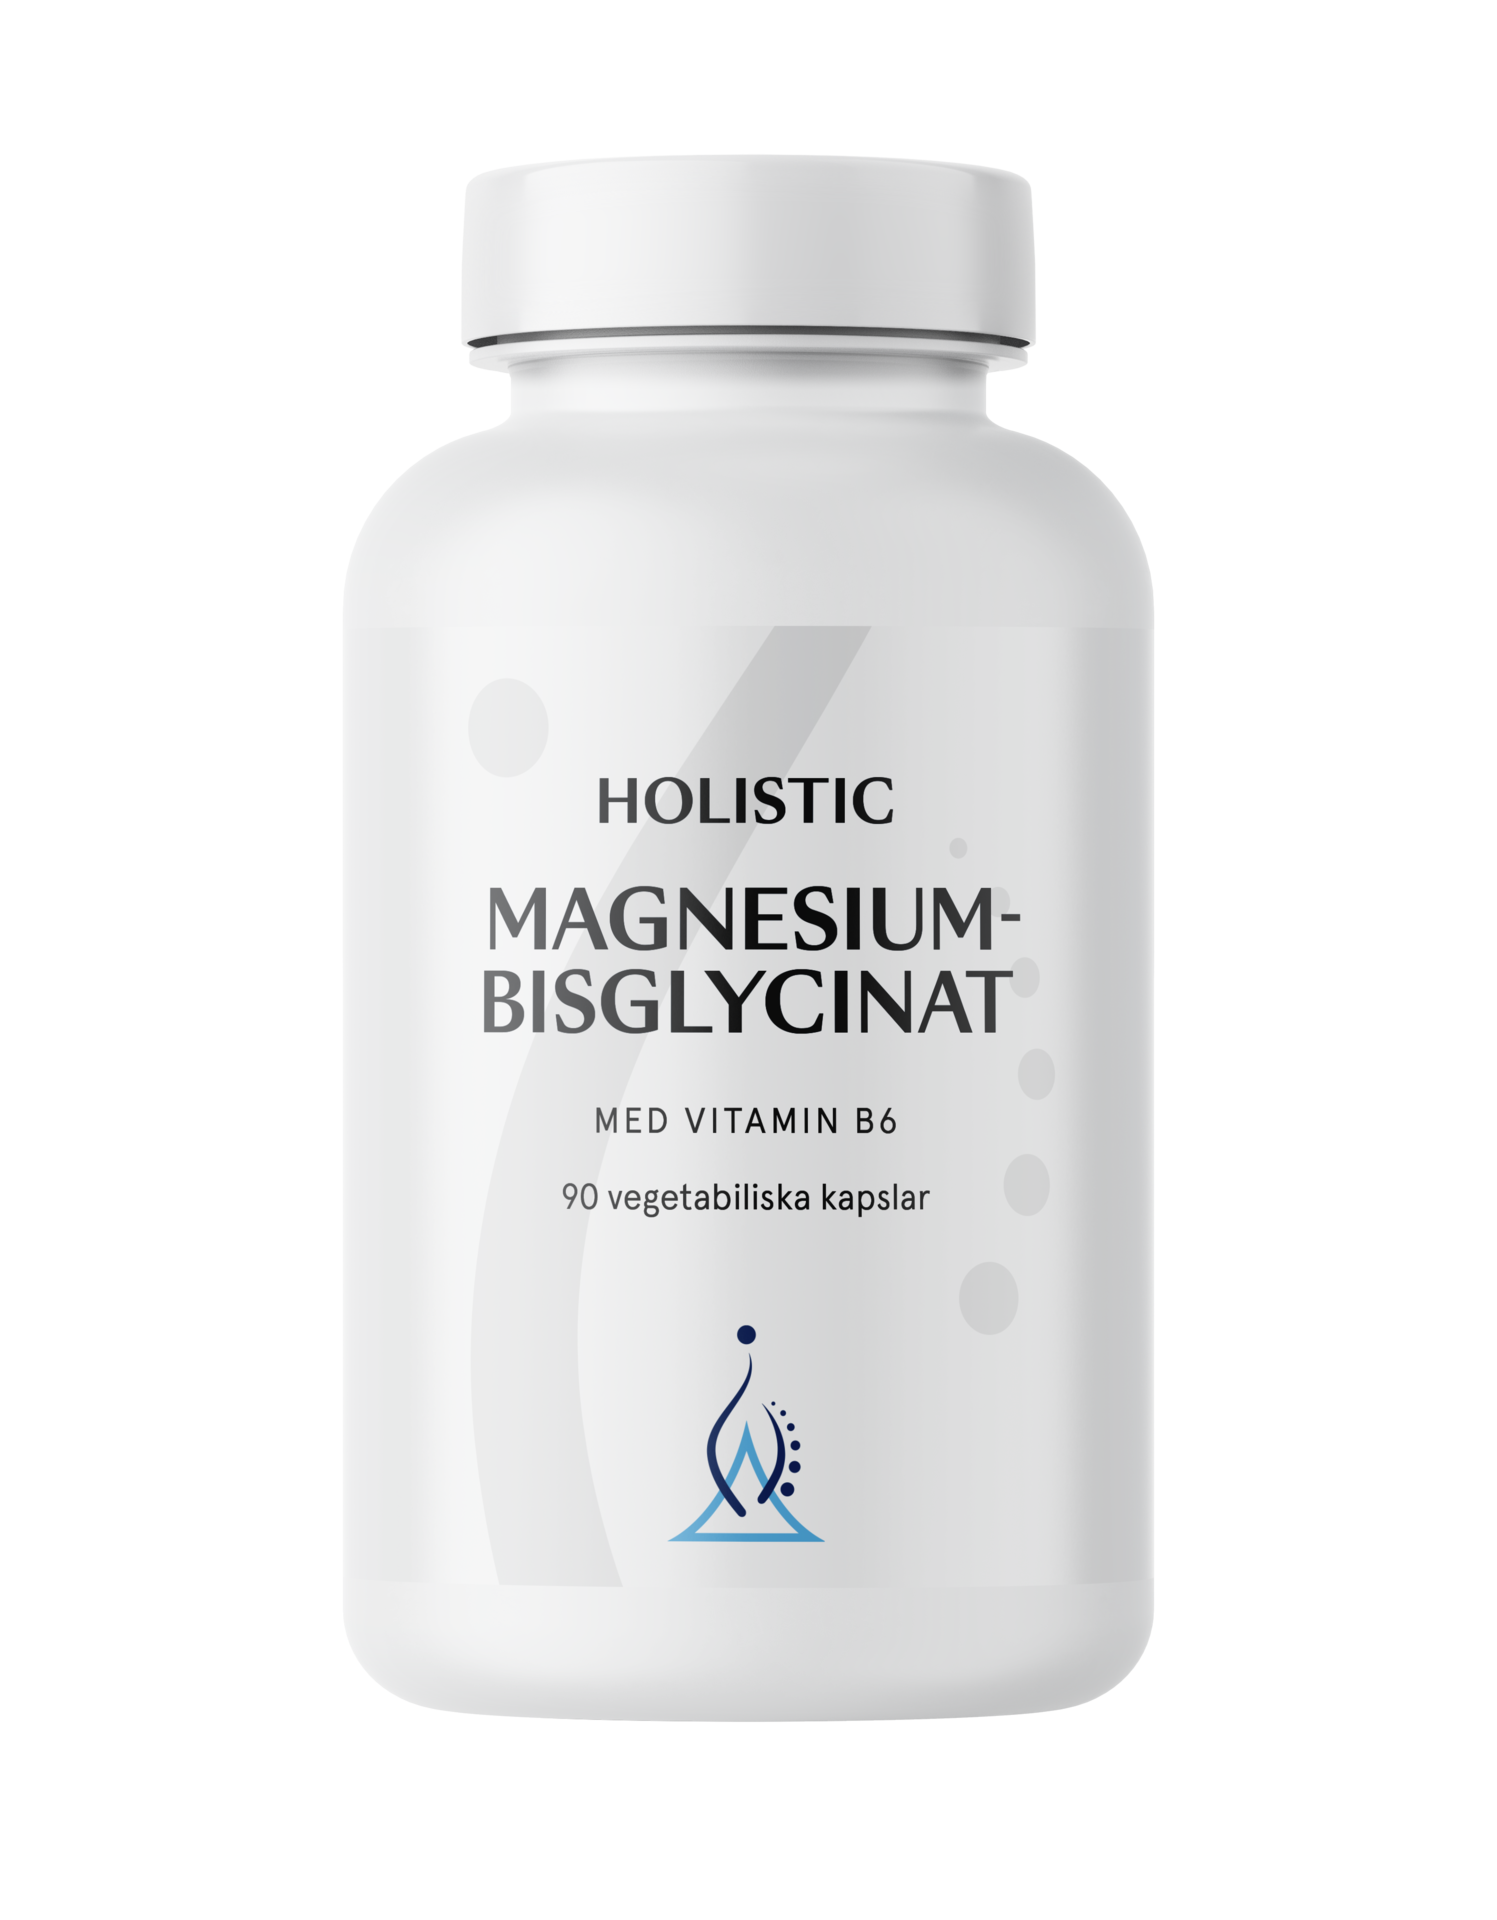 Holistic Magnesiumbisglycinat 100 mg, 90 vegetabiliska kapslar